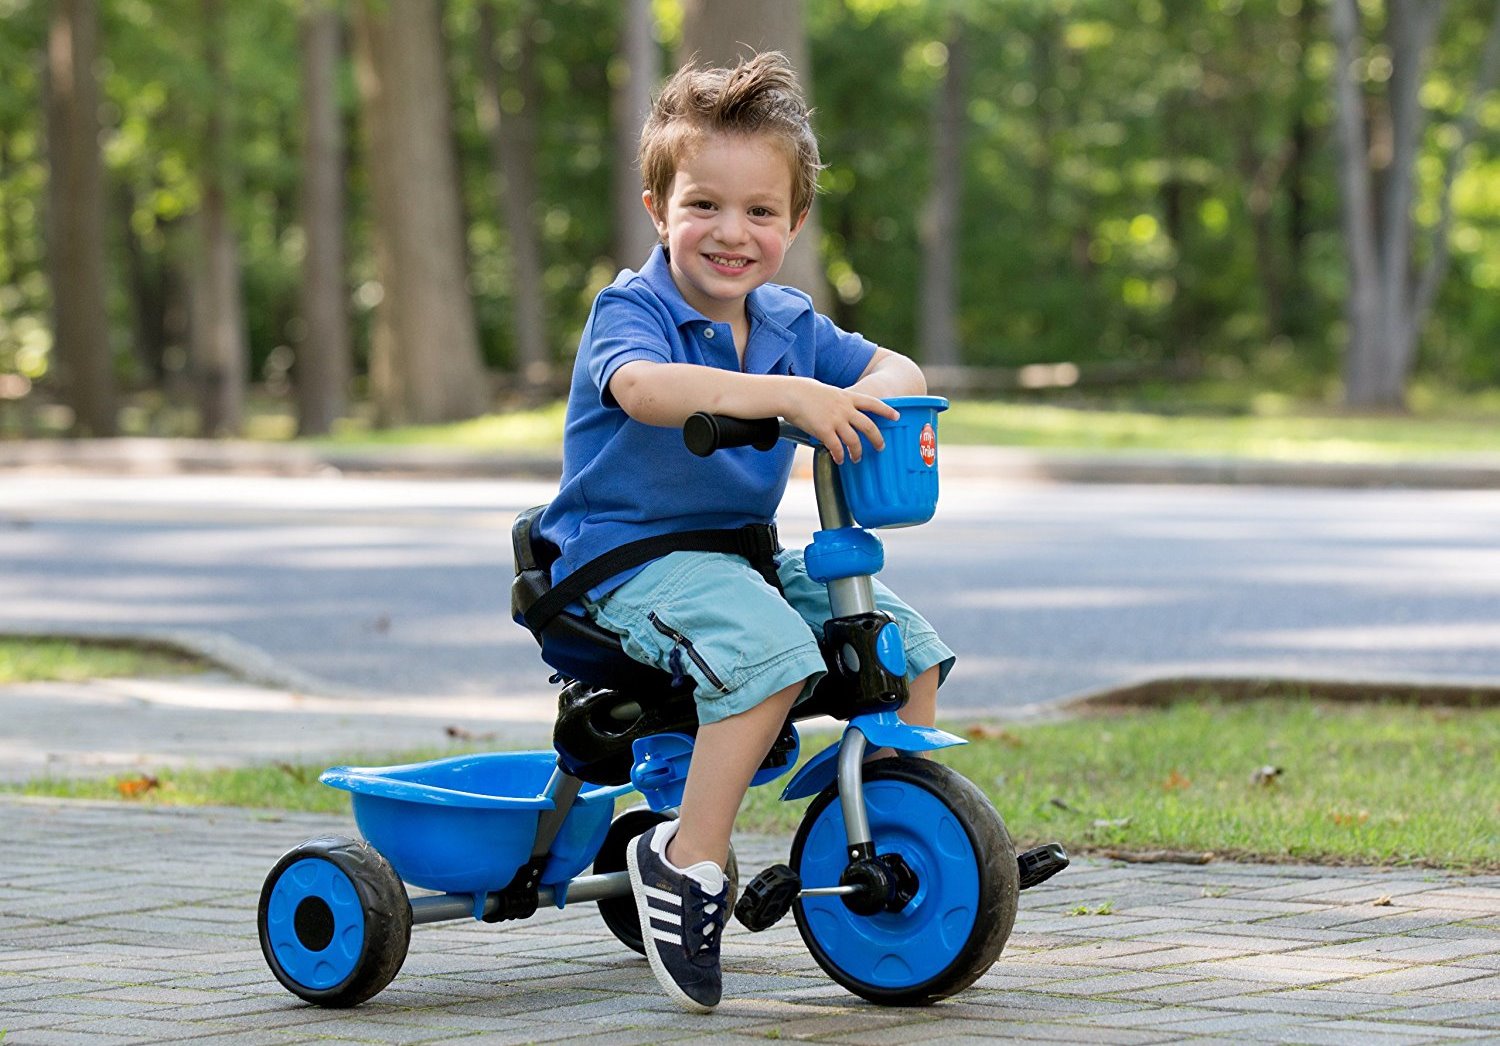 Колеса на детский трехколесный велосипед. Трехколесный велосипед. Велосипед детский трехколесный. Дети с велосипедом. Мальчик на трехколесном велосипеде.